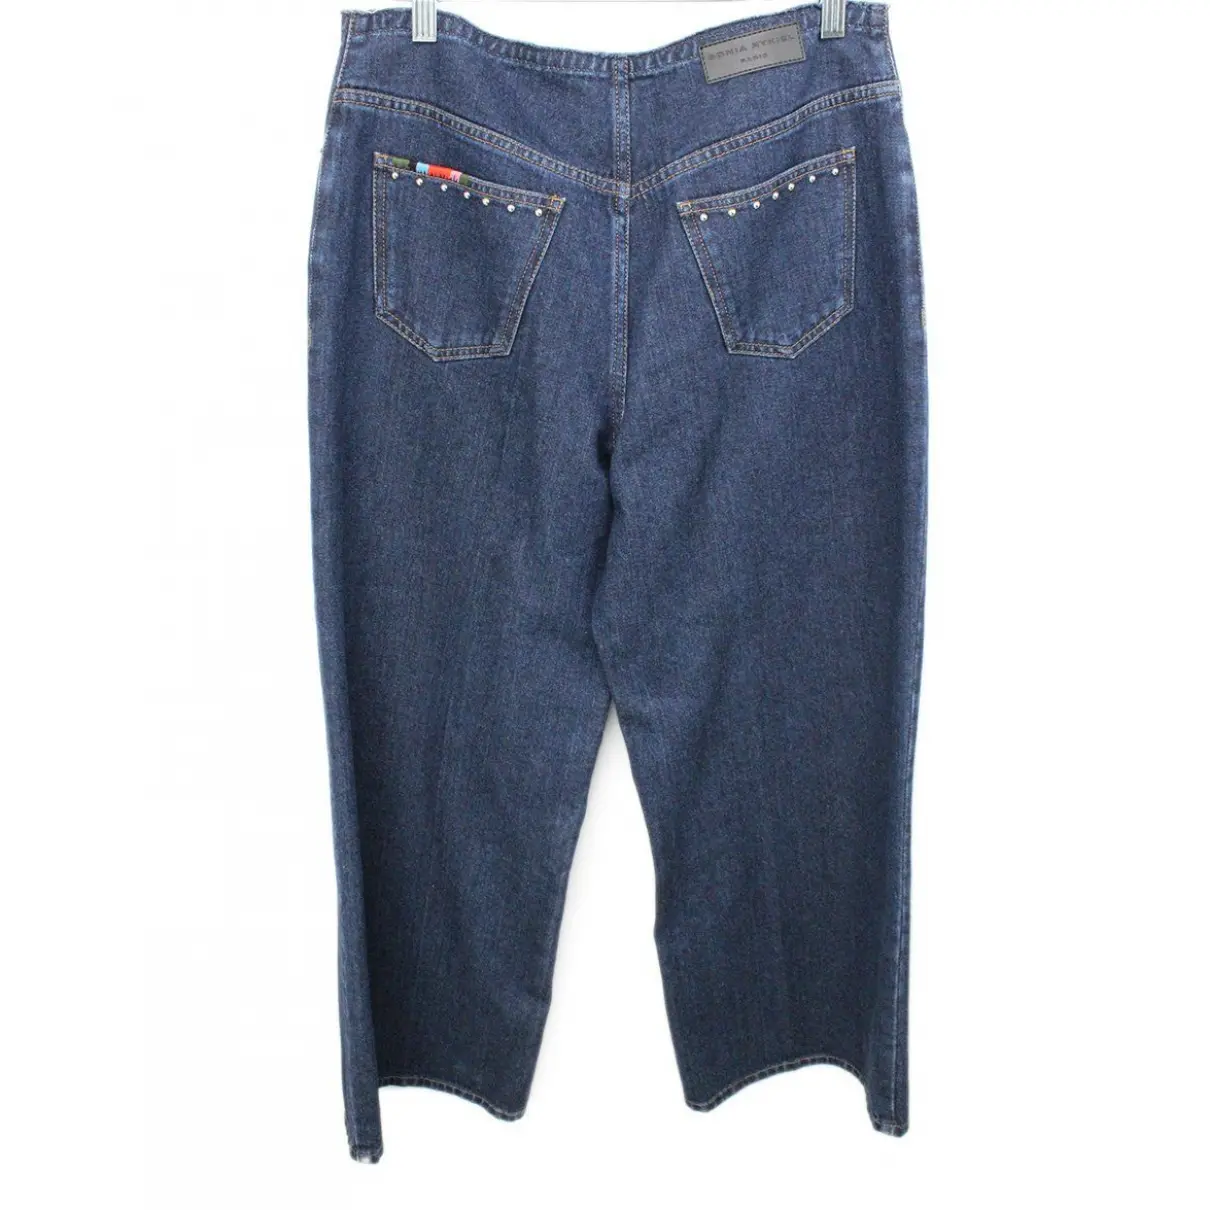 Buy Sonia Rykiel Jeans online - Vintage